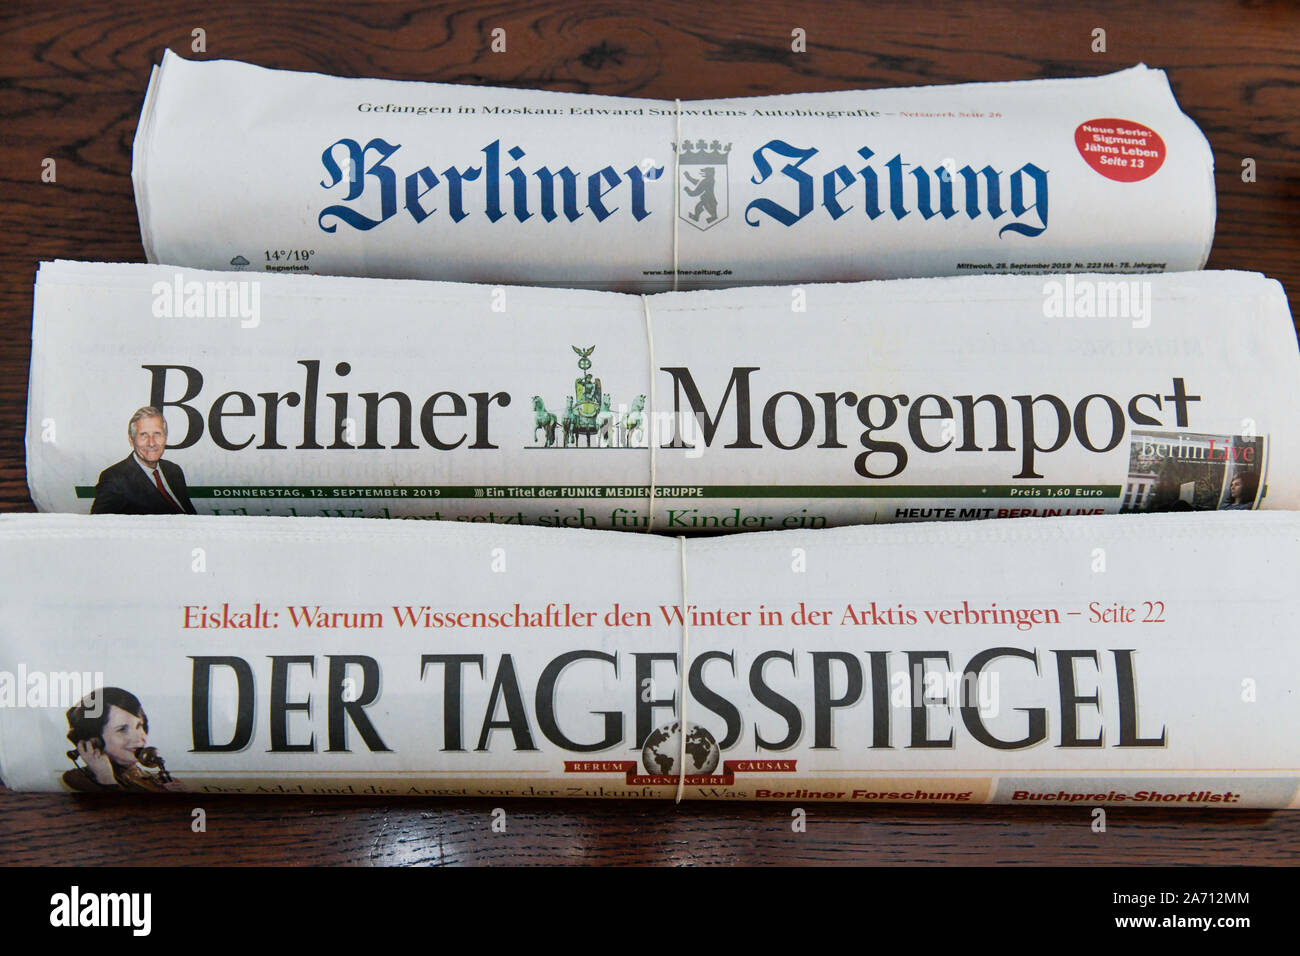 Berliner Zeitungen "Der Tagesspiegel, "Berliner Morgenpost und "Berliner Zeitung" Stock Photo